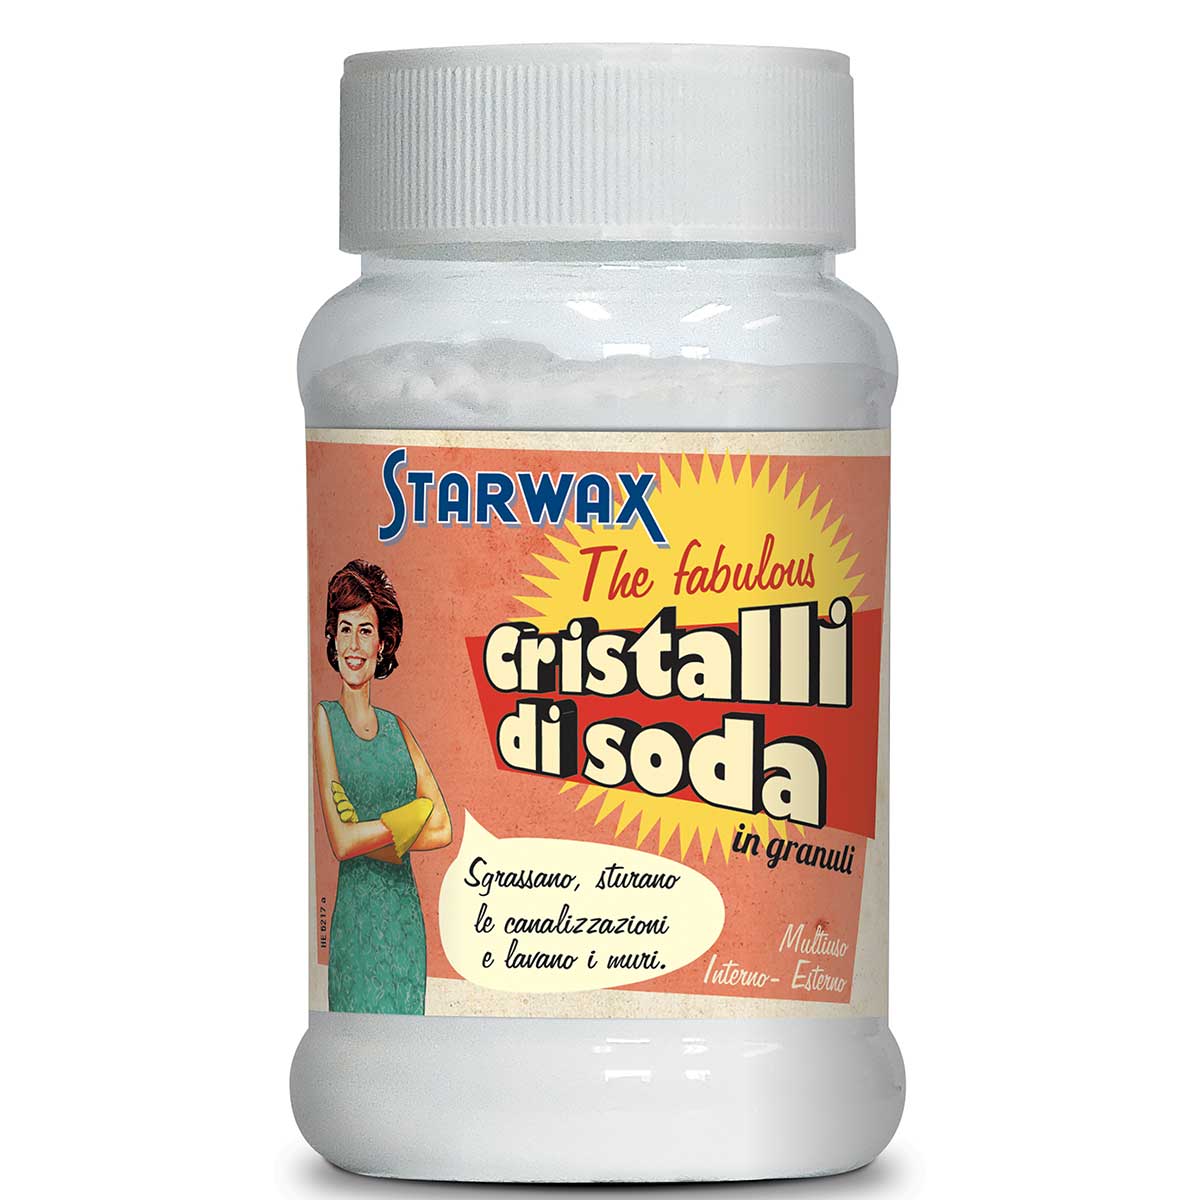 Cristalli di soda  Starwax, Prodotti per pulizie casa